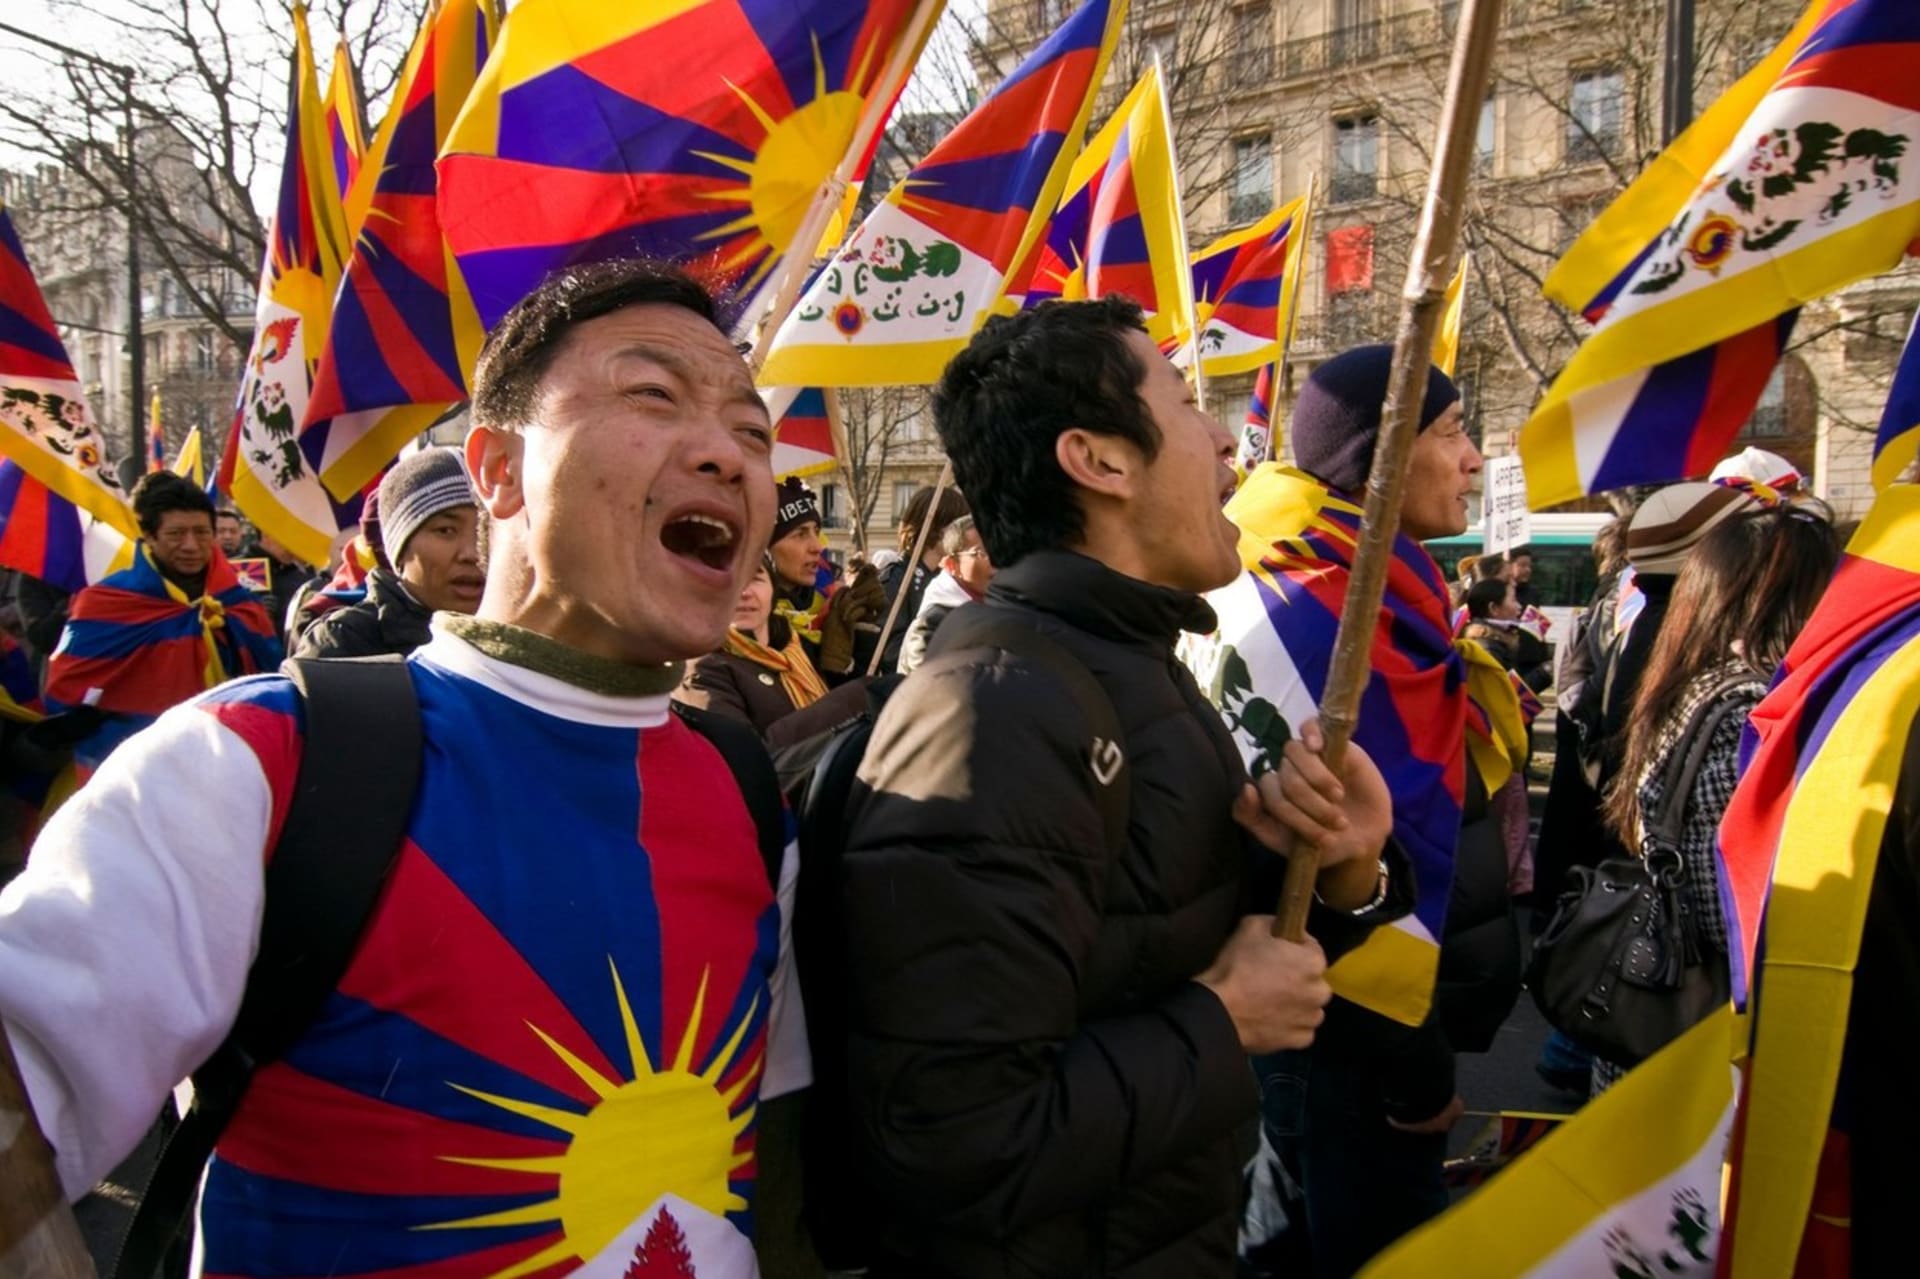 Tibeťané dodnes proti okupaci protestují